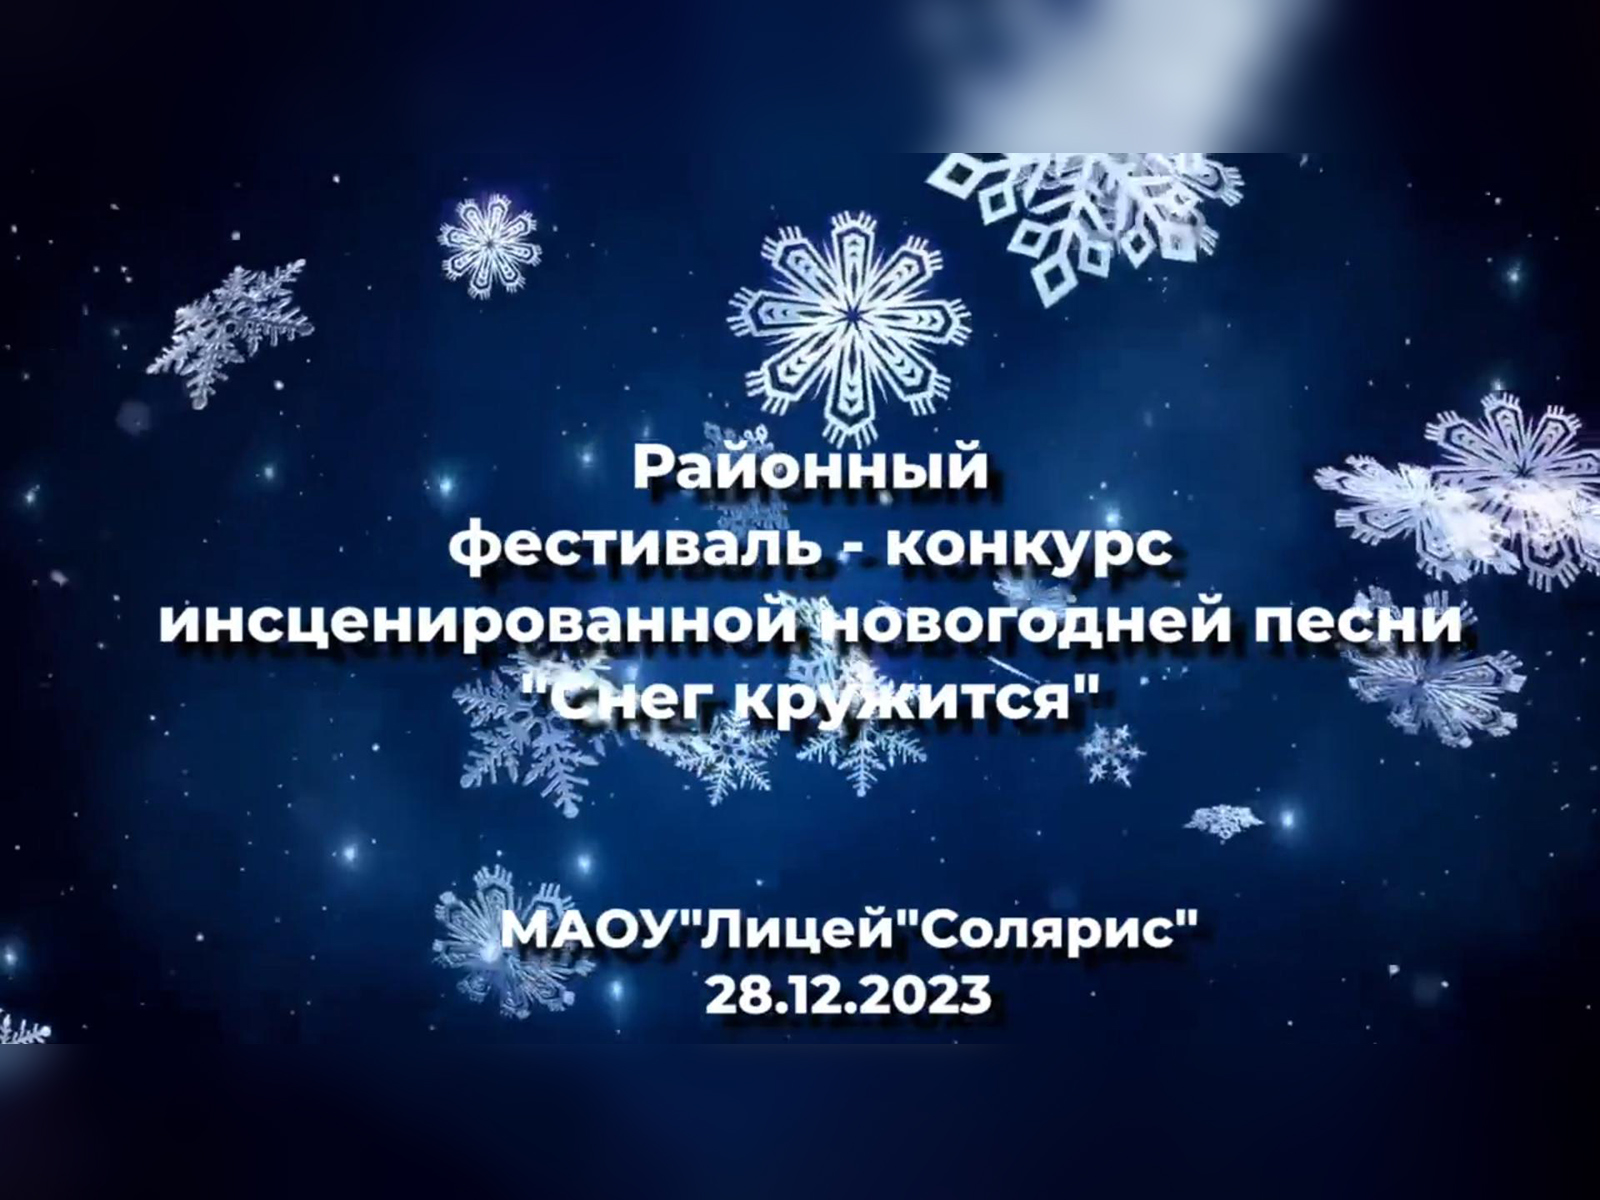 Районный фестиваль-конкурс инсценированной новогодней песни «Снег кружится».